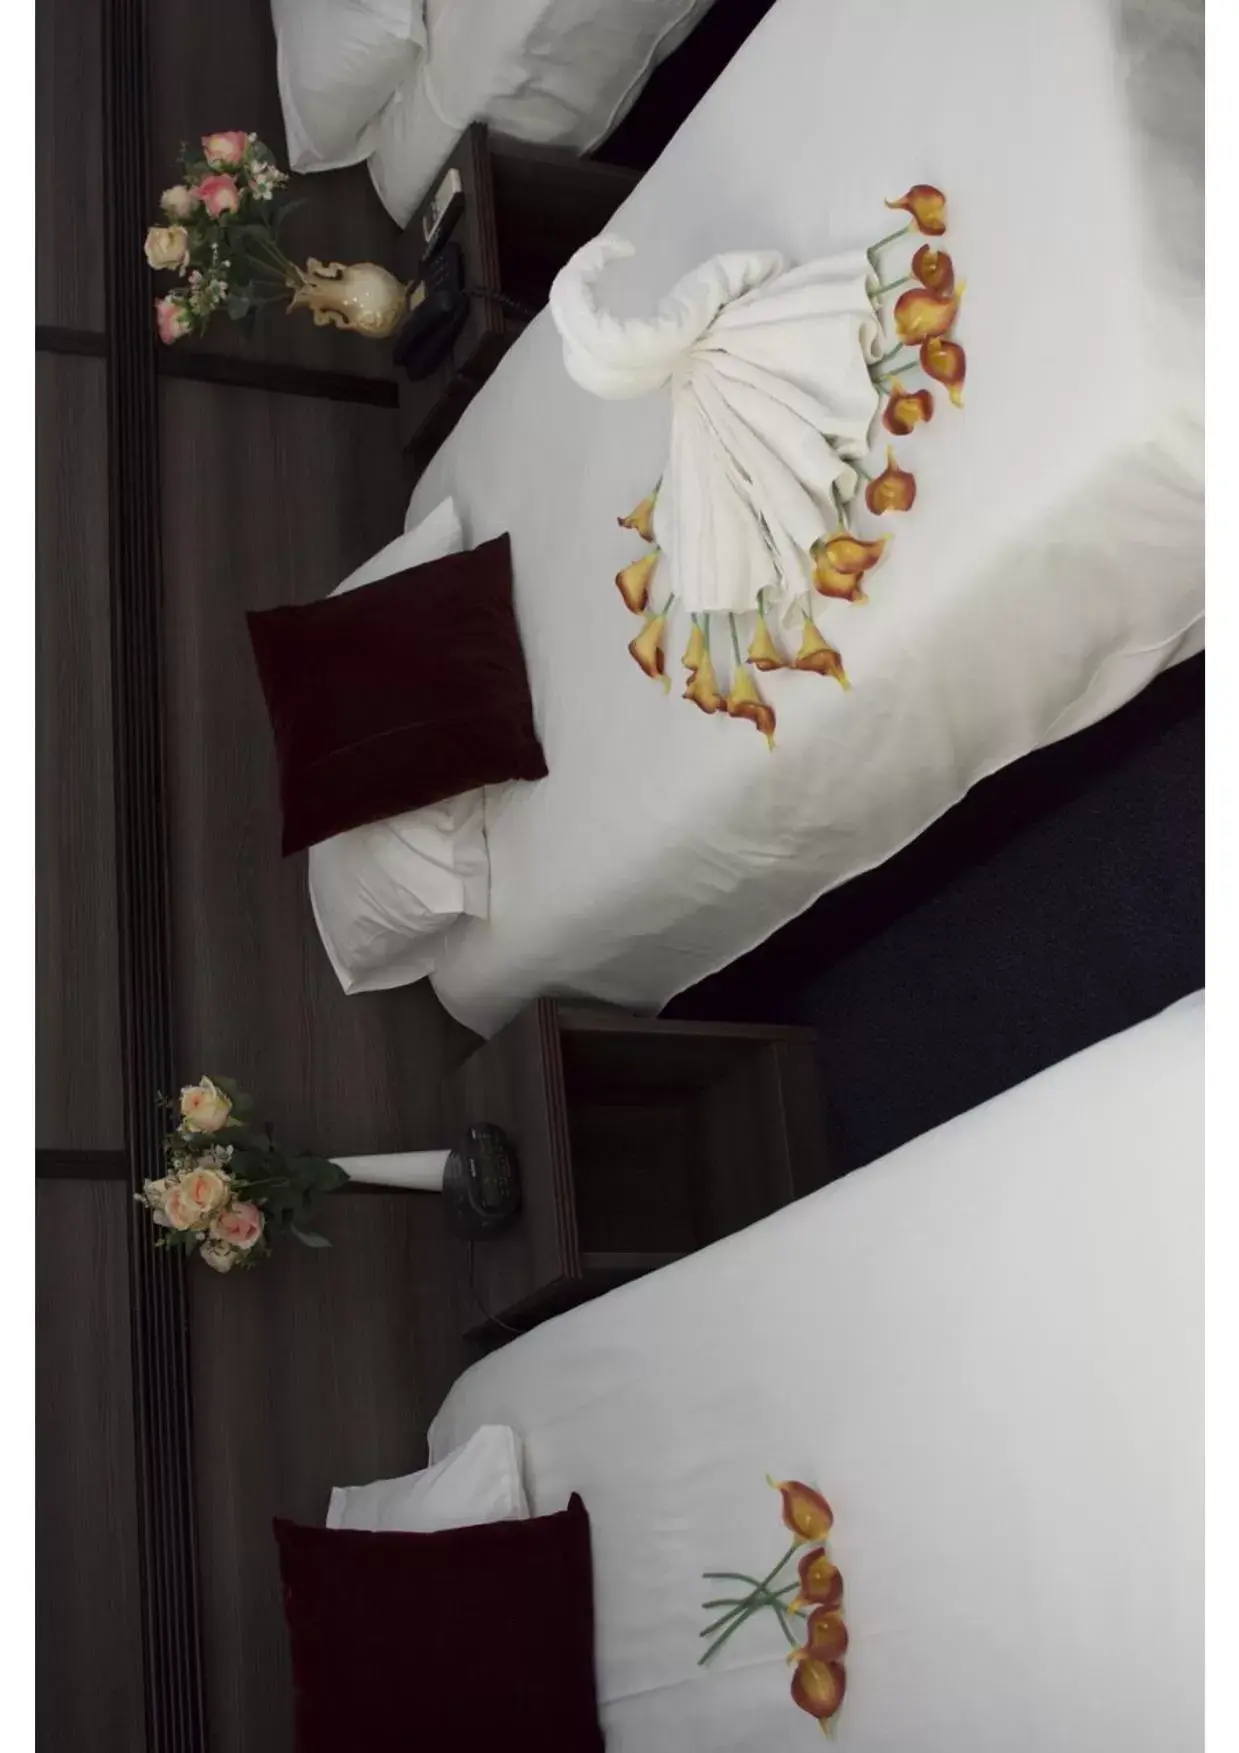 Bed in Hotel Le Paris